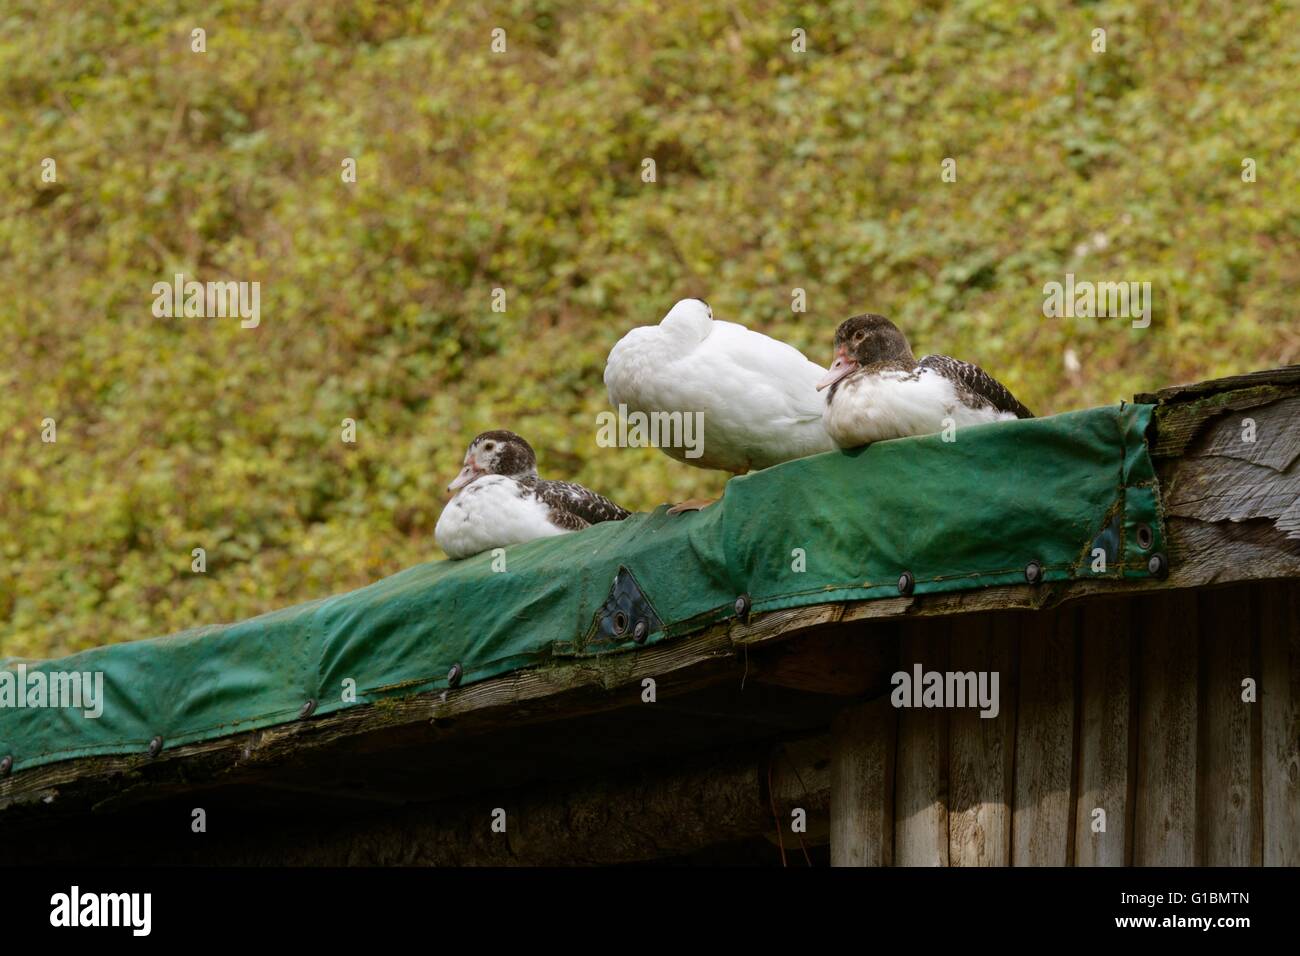 Les canards de Barbarie ou de barbarie au sommet d'un toit en appentis, Pays de Galles, Royaume-Uni Banque D'Images